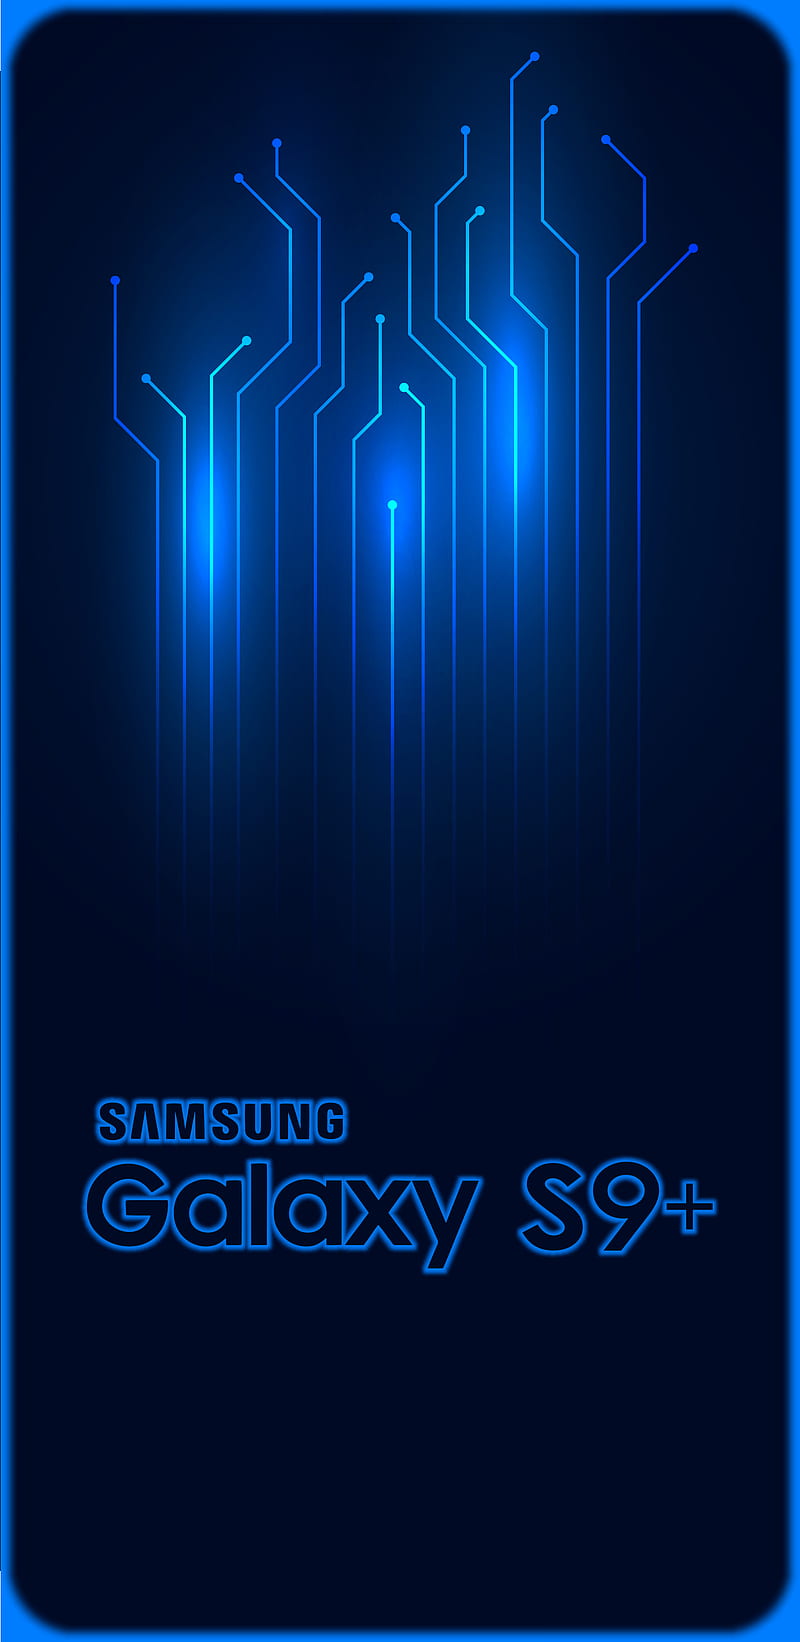 Mời bạn tải về trọn bộ hình nền Samsung Galaxy S9 và S9